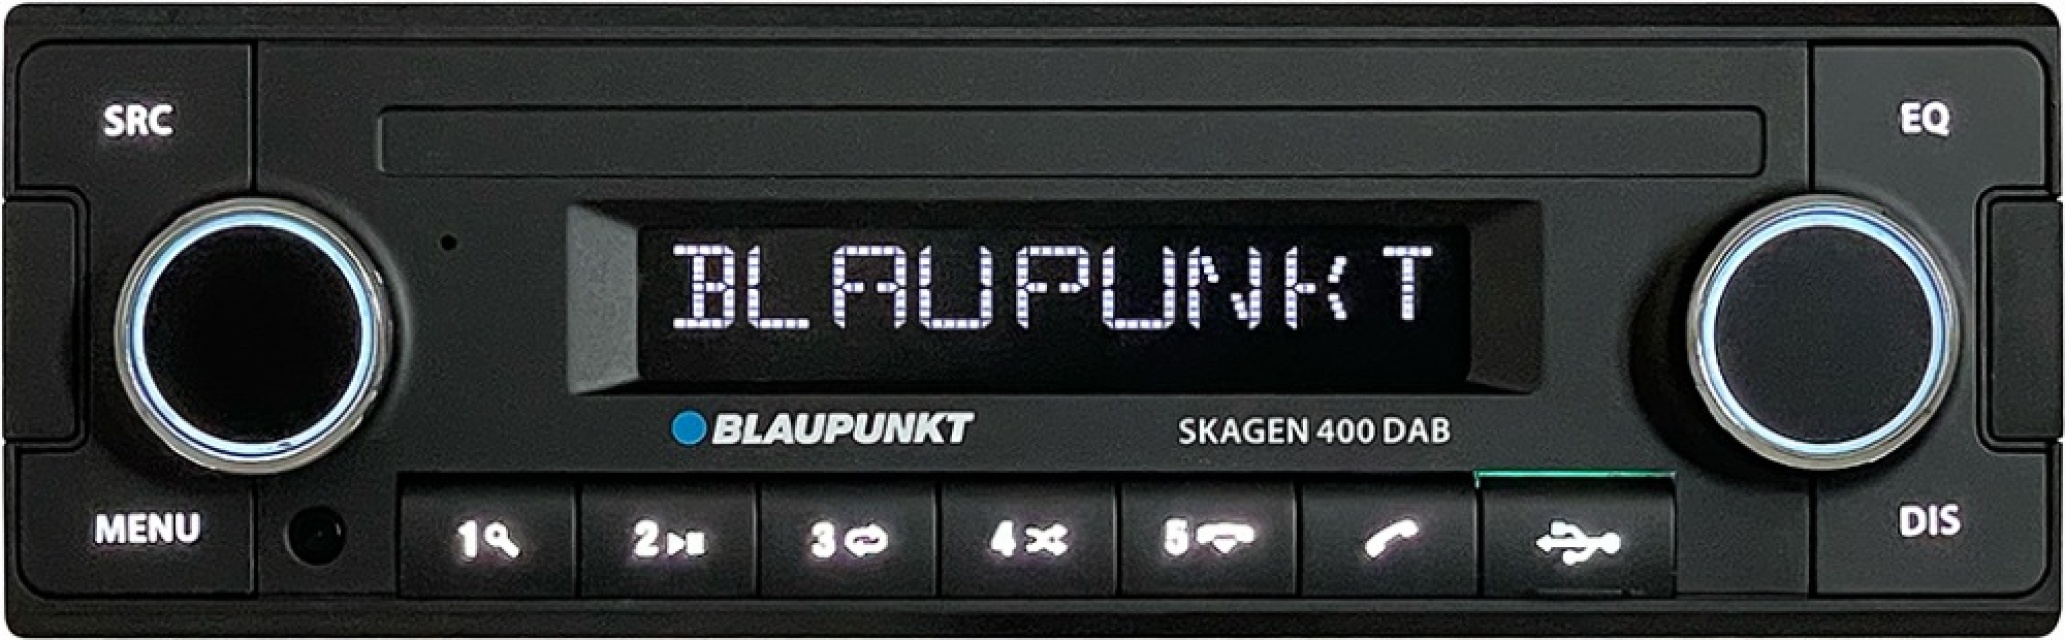 Blaupunkt Skagen 400 DAB, retro bilstereo med Bluetooth och DAB+